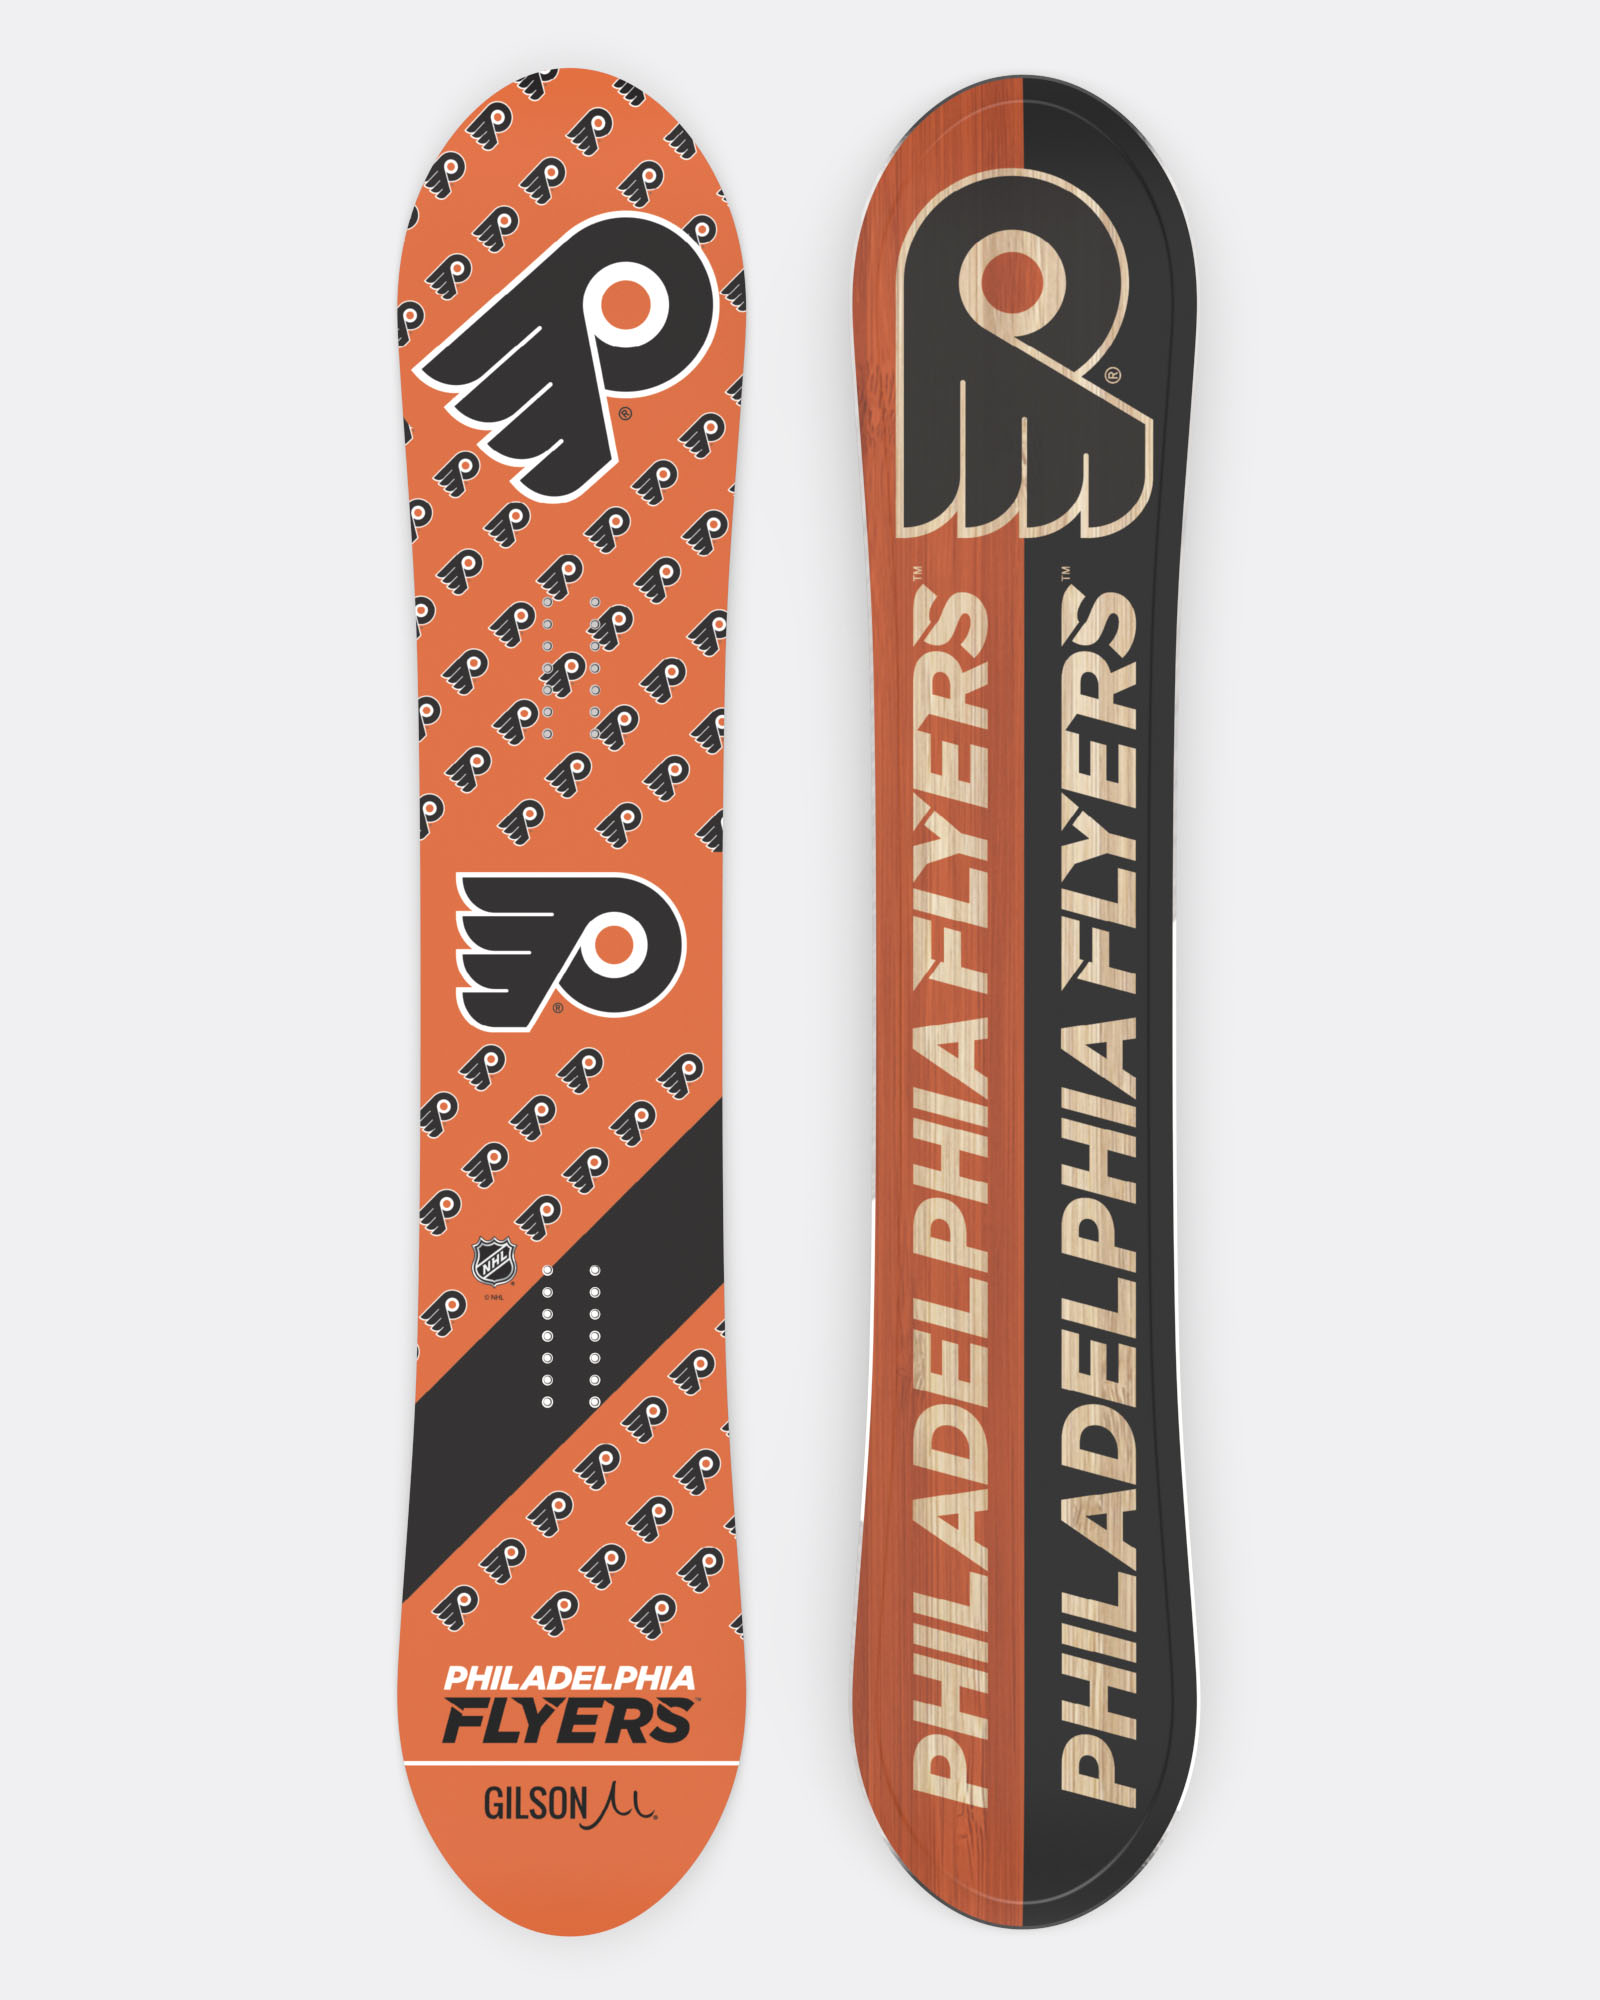 Philadelphia Flyers graphics